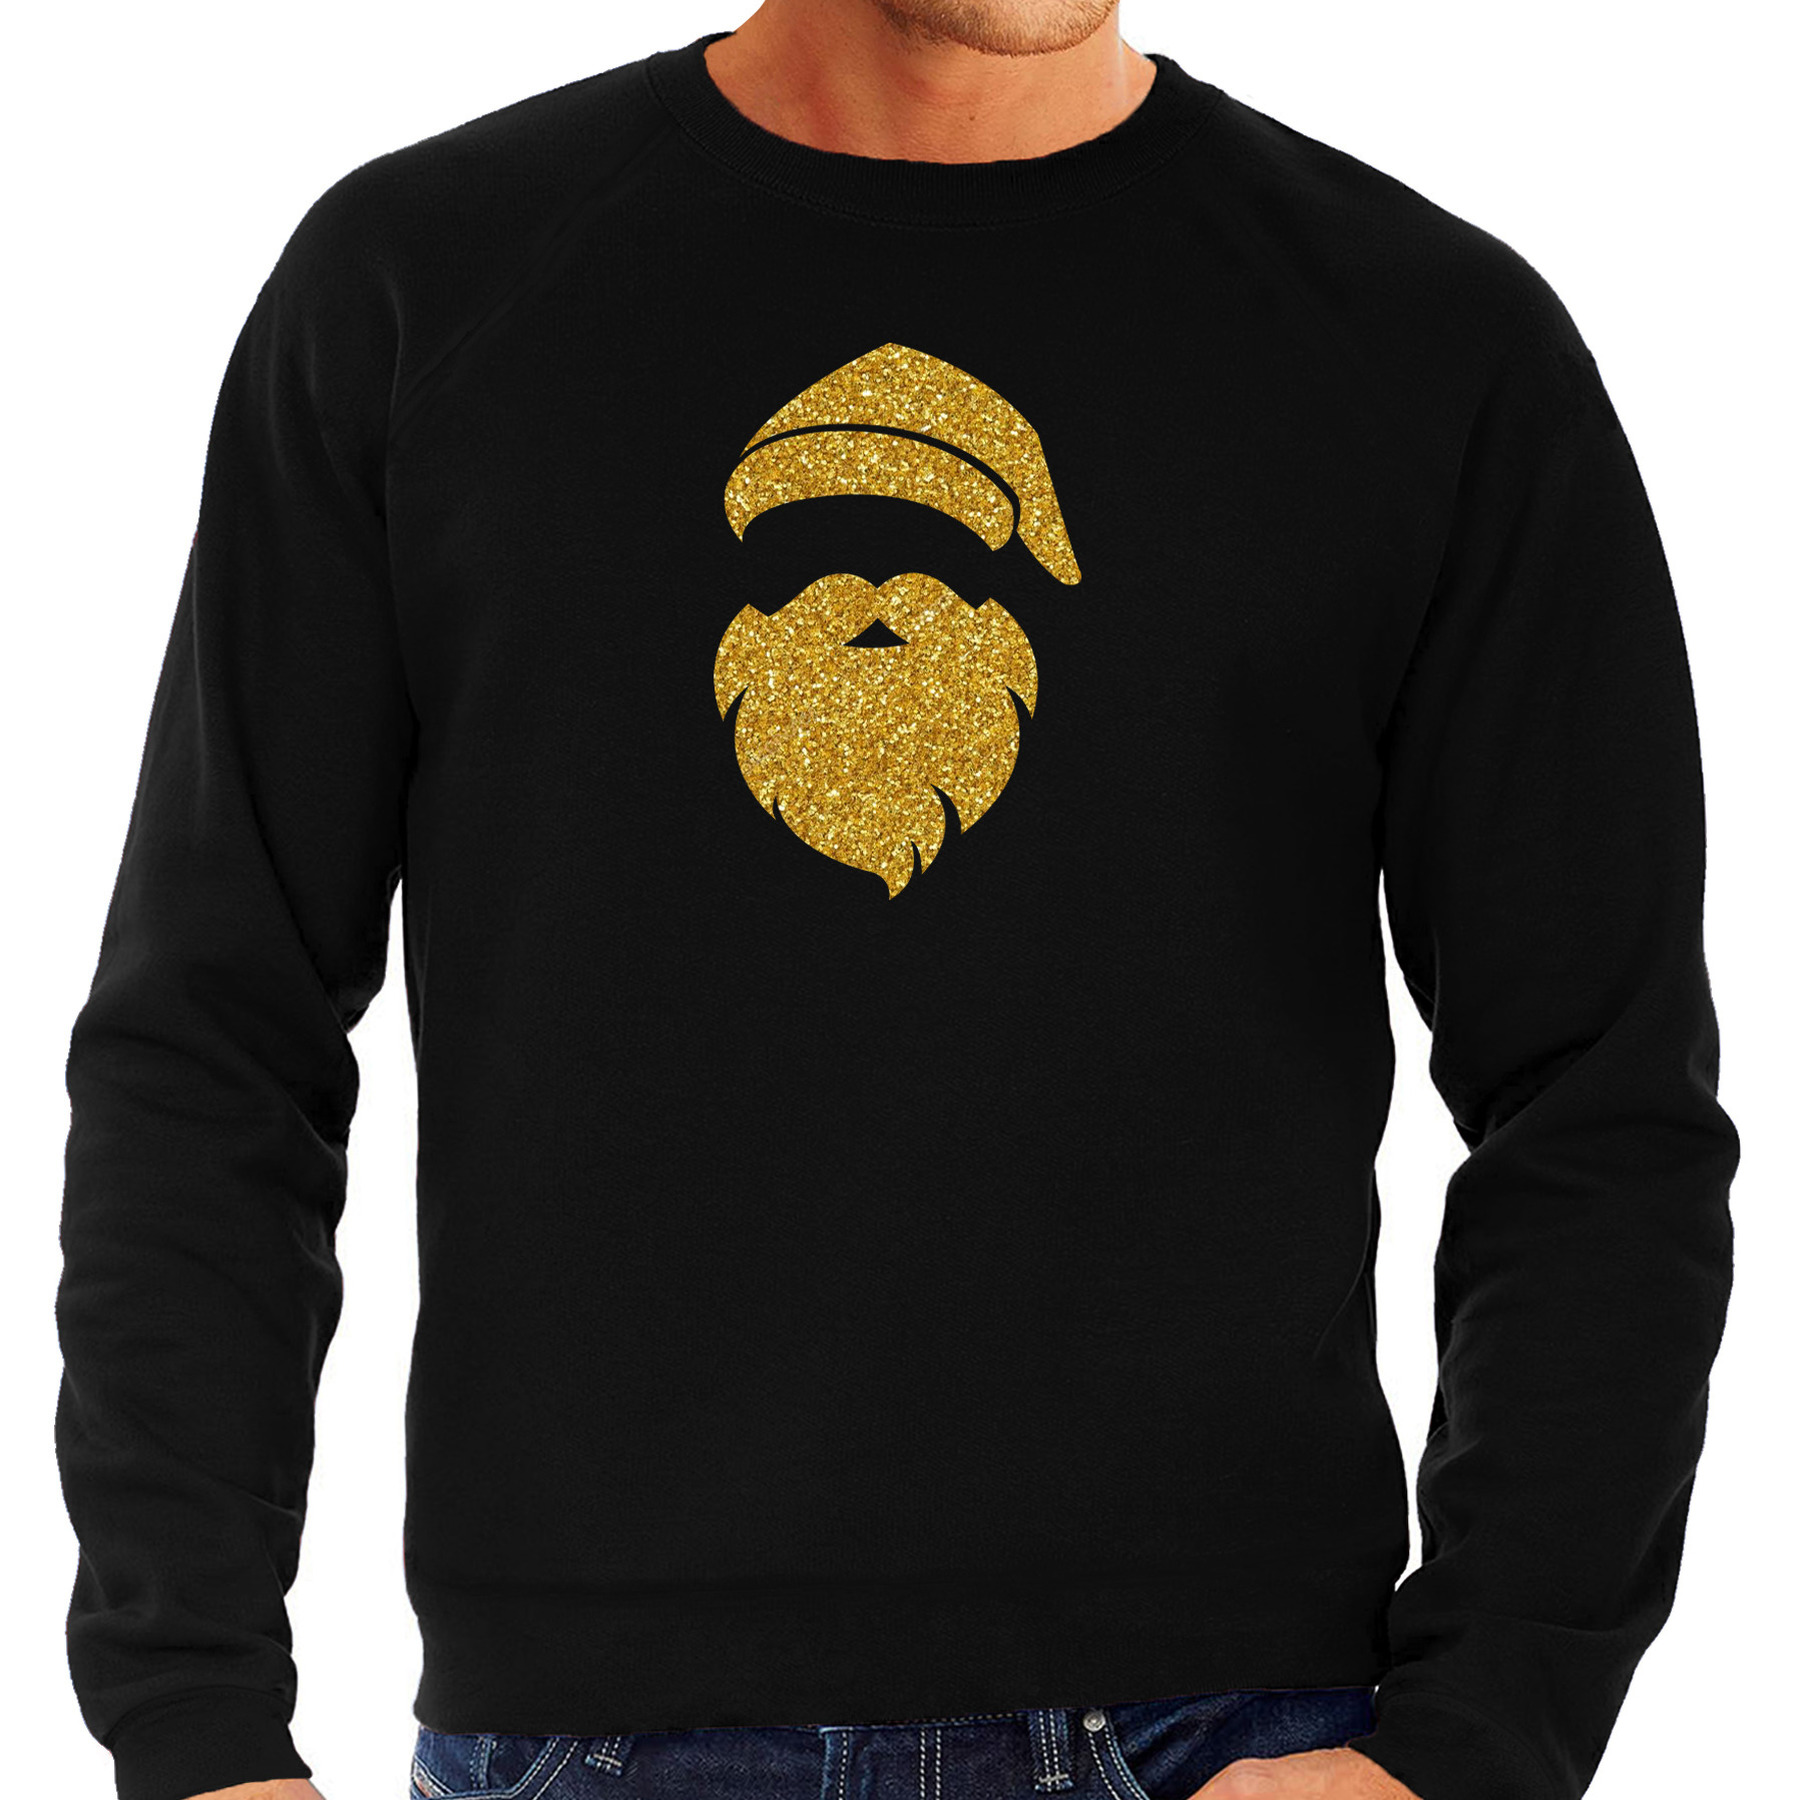 Kerstman hoofd Kerst sweater-trui zwart voor heren met gouden glitter bedrukking